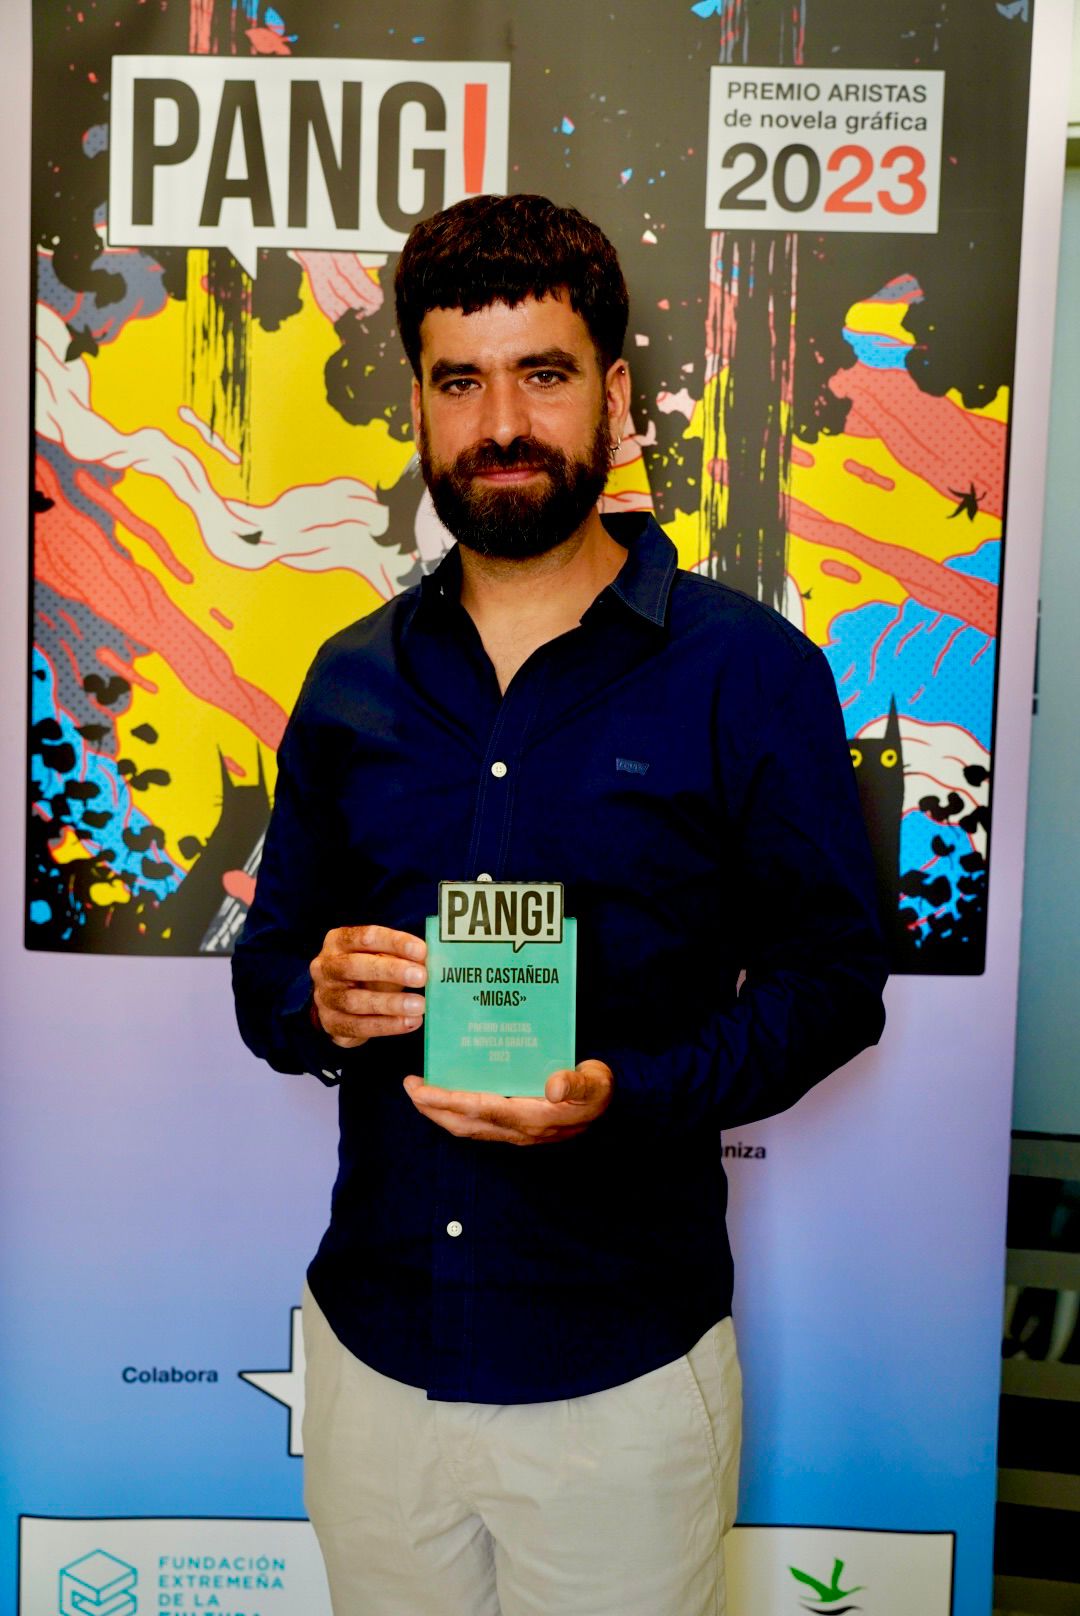 Image 6 of article Javier Castañeda recibe el premio PANG! de novela gráfica patrocinado por la Fundación Extremeña de la Cultura